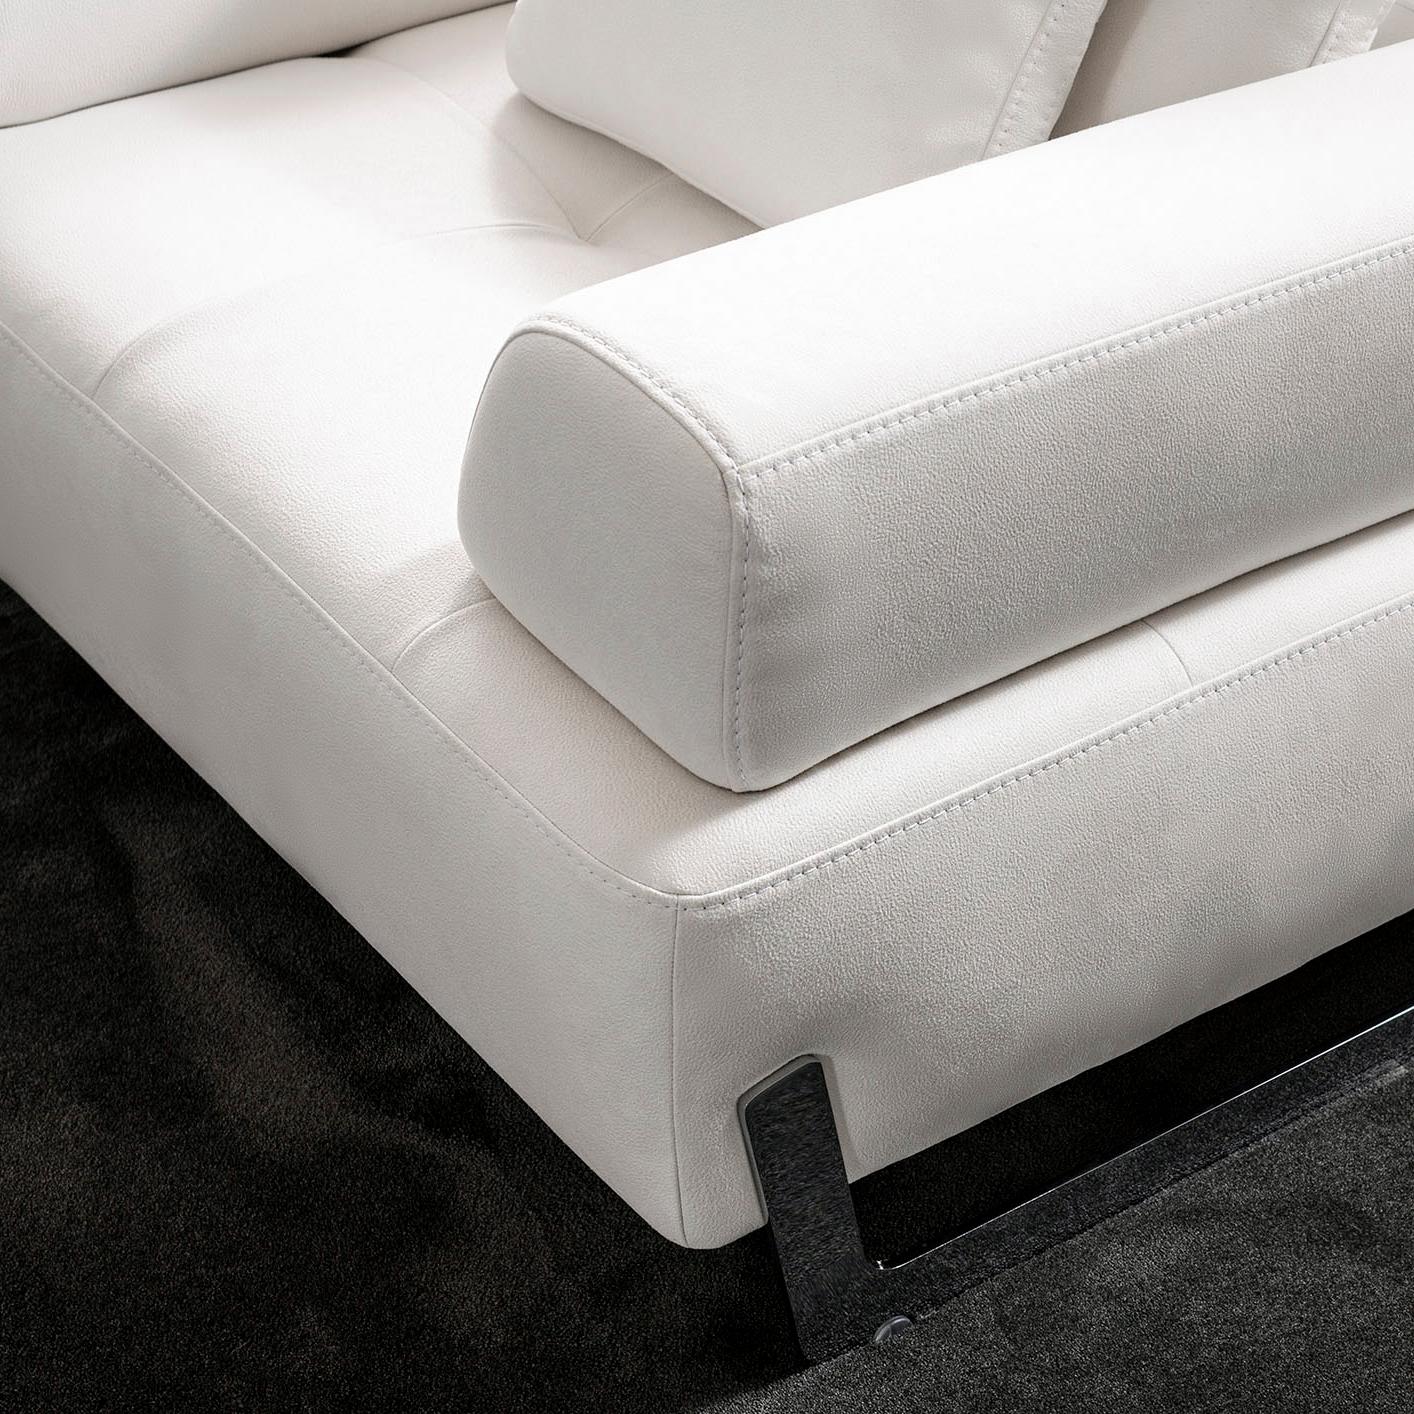 Wir stellen das verführerische Sofa Ravenna vor. Dieses moderne Sofa ist der Inbegriff von Luxus und Funktionalität. Das Sofa besteht aus einem luxuriösen Wildlederimitat auf verchromten Beinen und verfügt über eine verschiebbare Rückenlehne sowie